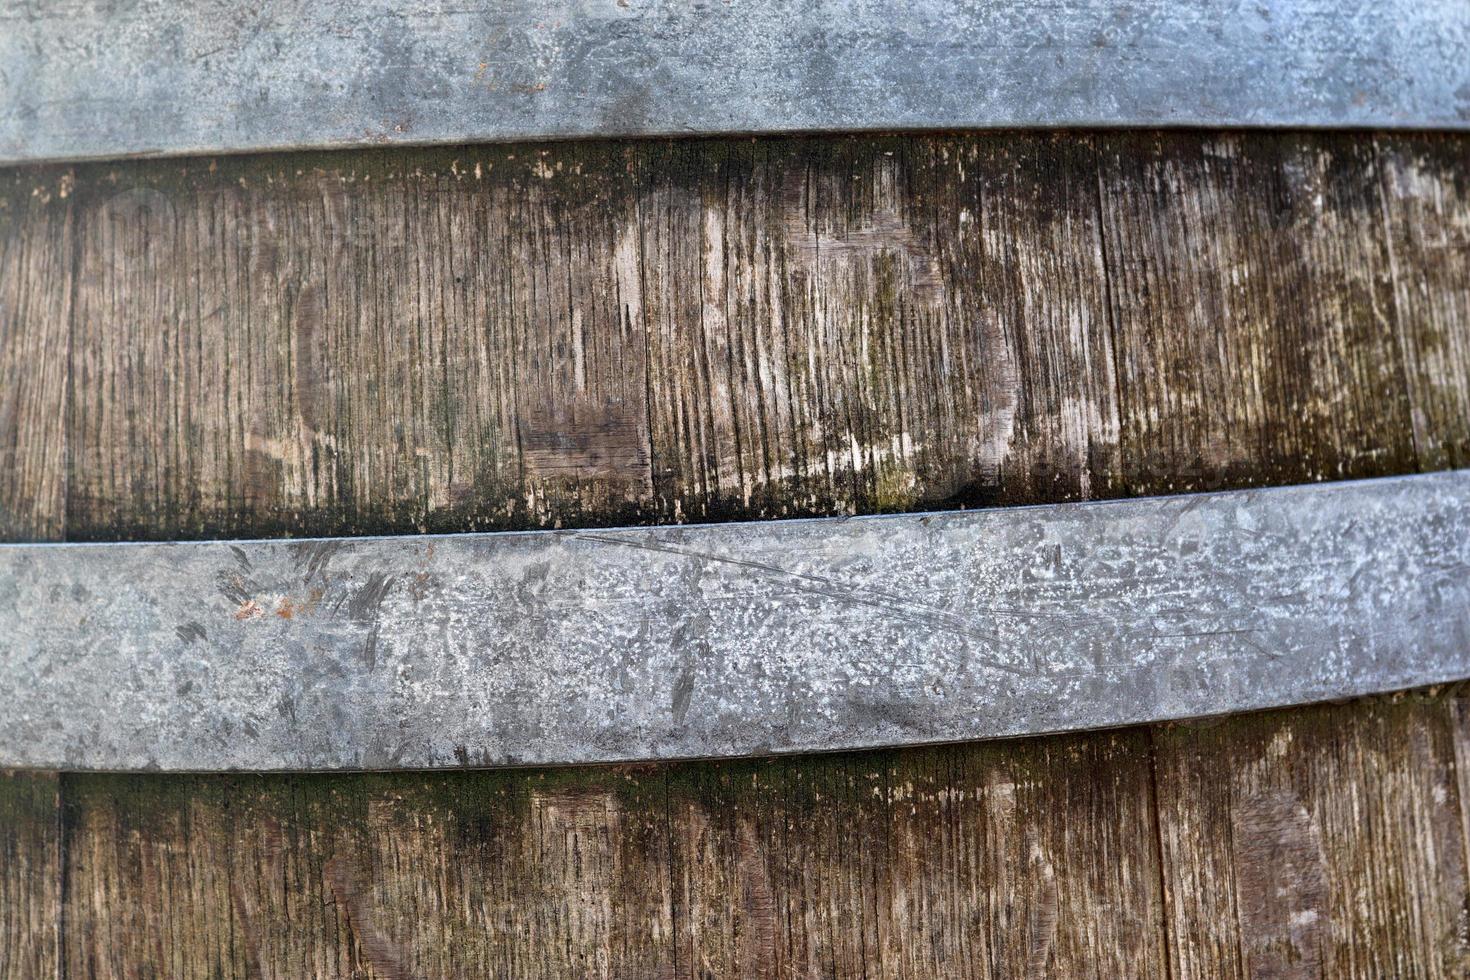 vue rapprochée sur différentes surfaces en bois de planches de bûches et de murs en bois en haute résolution photo